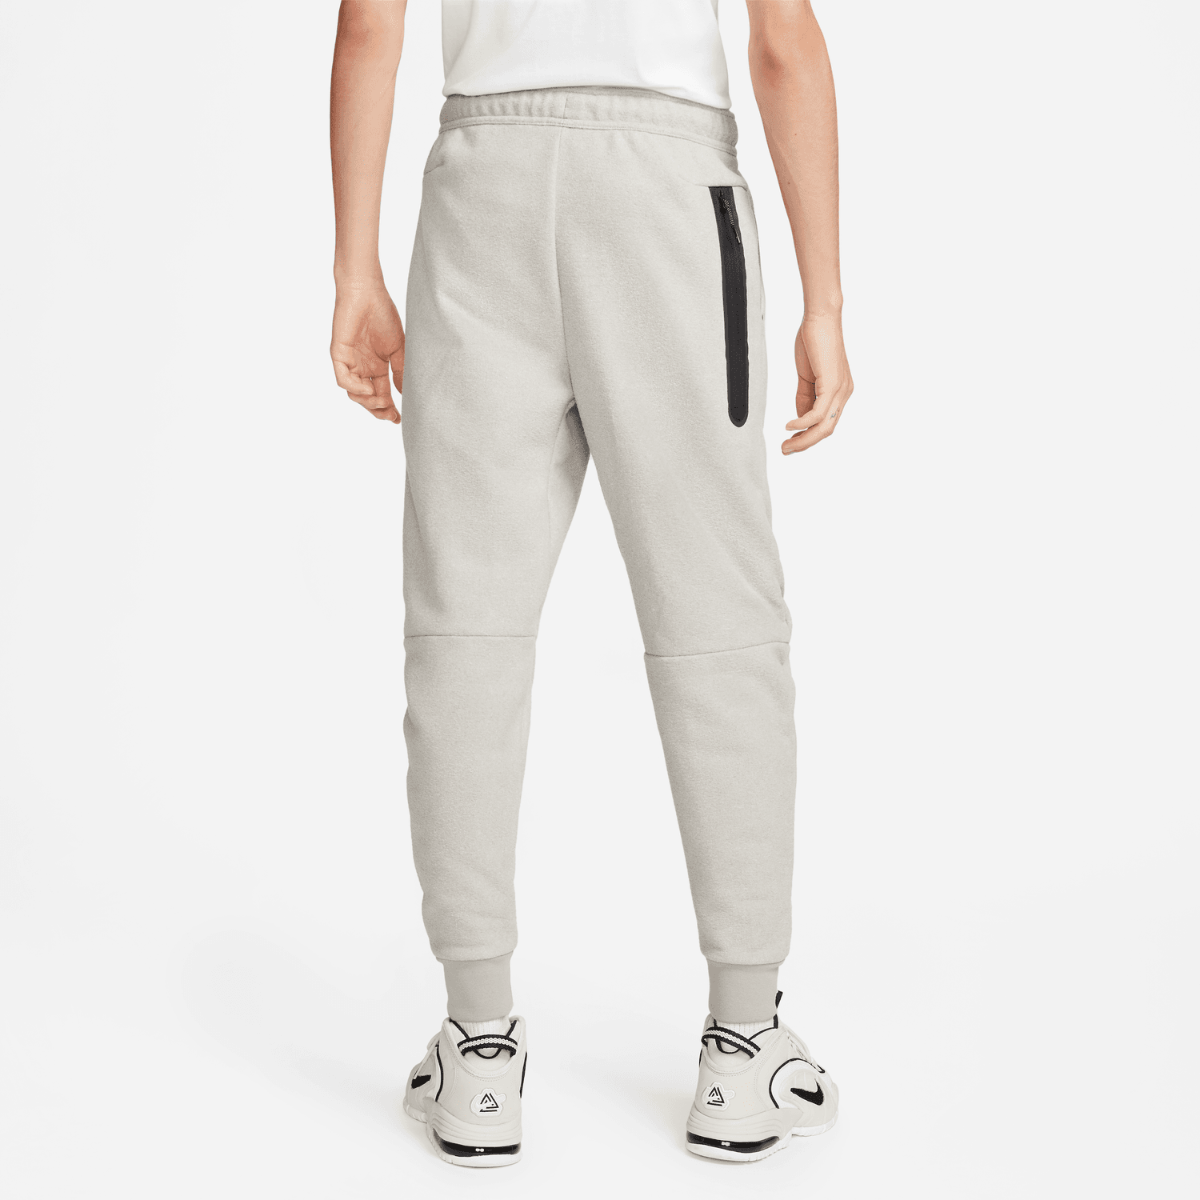 Pantalon Sportswear Nike Tech Fleece - Grau